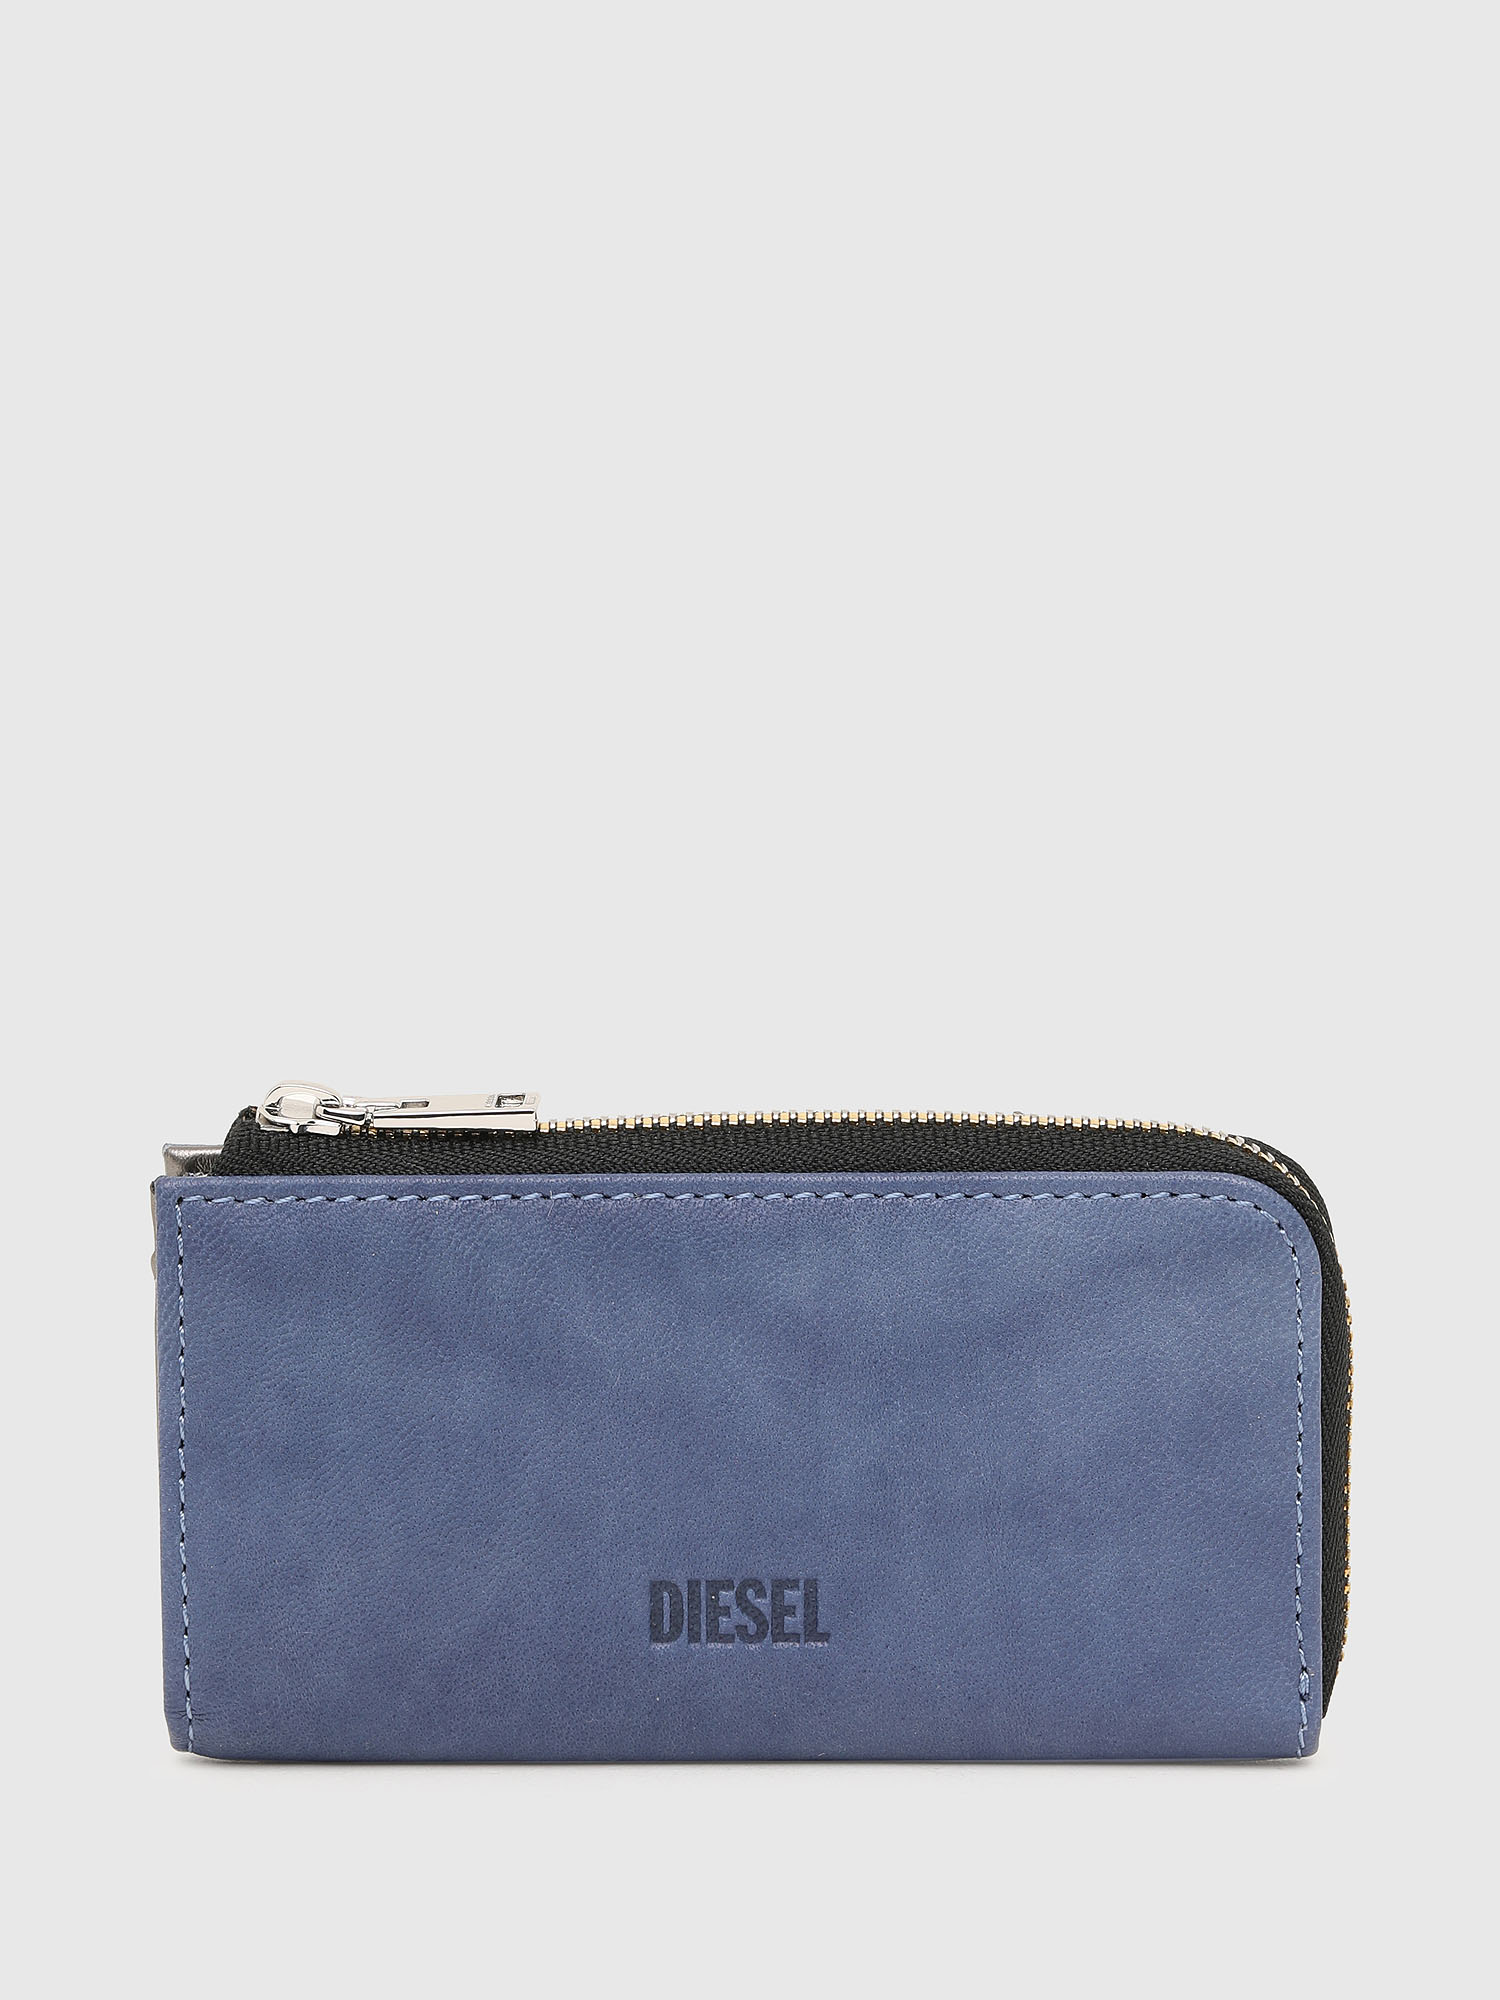 Diesel Wallet - DENIMFACE BABYKEY wallet blue